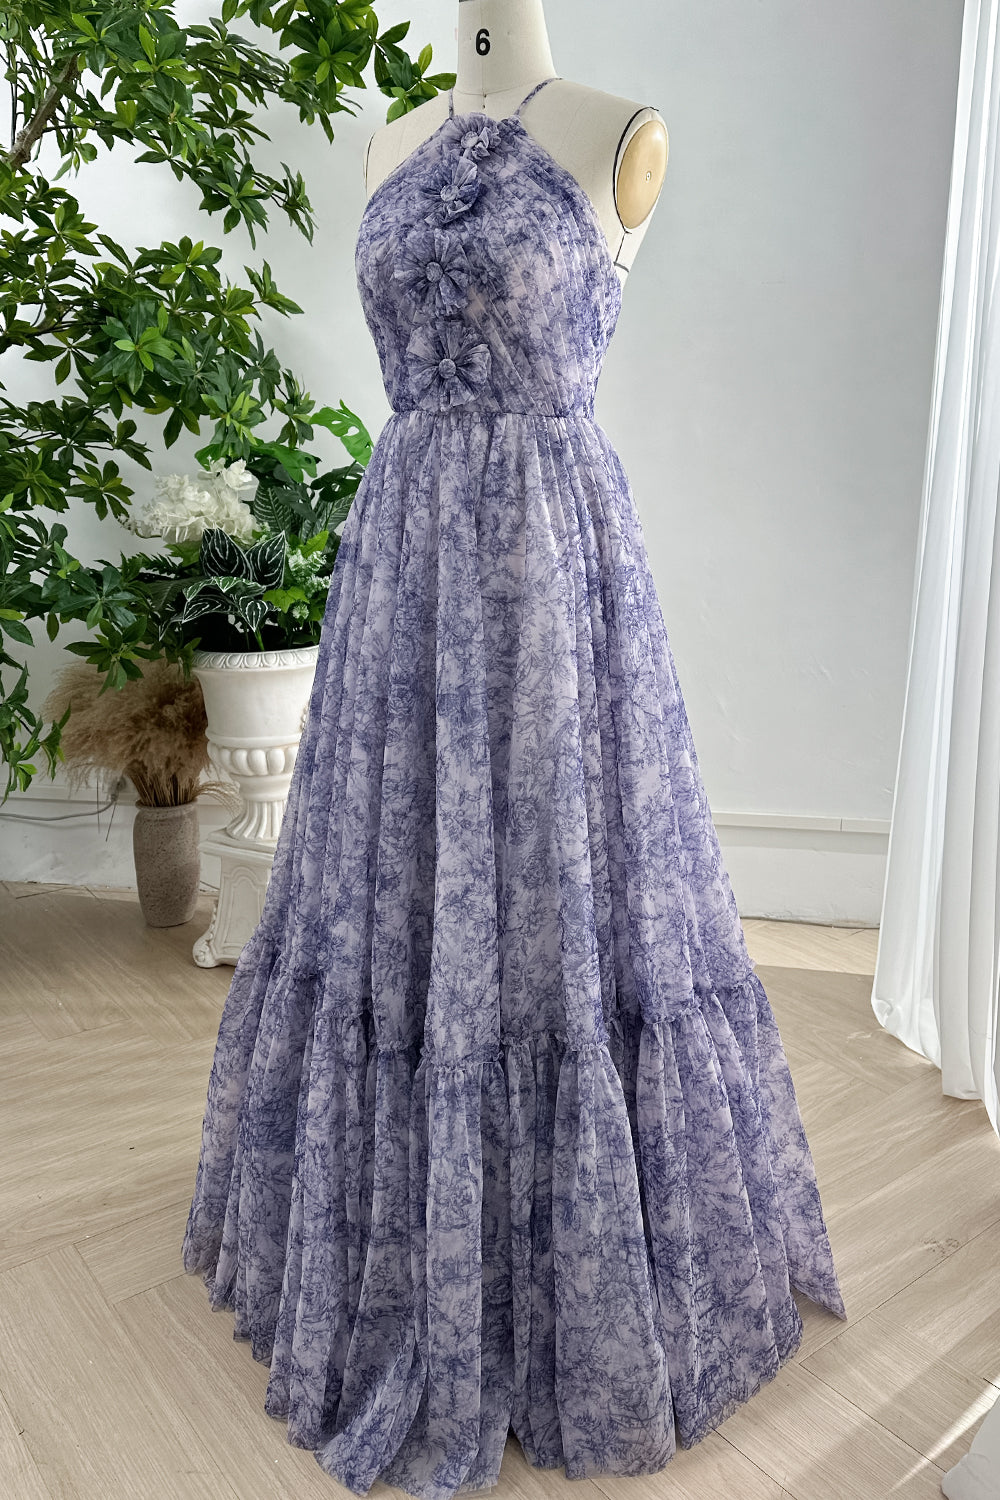 MissJophiel Halter Corset Blue White Print Tulle Dress with Handmade Flower